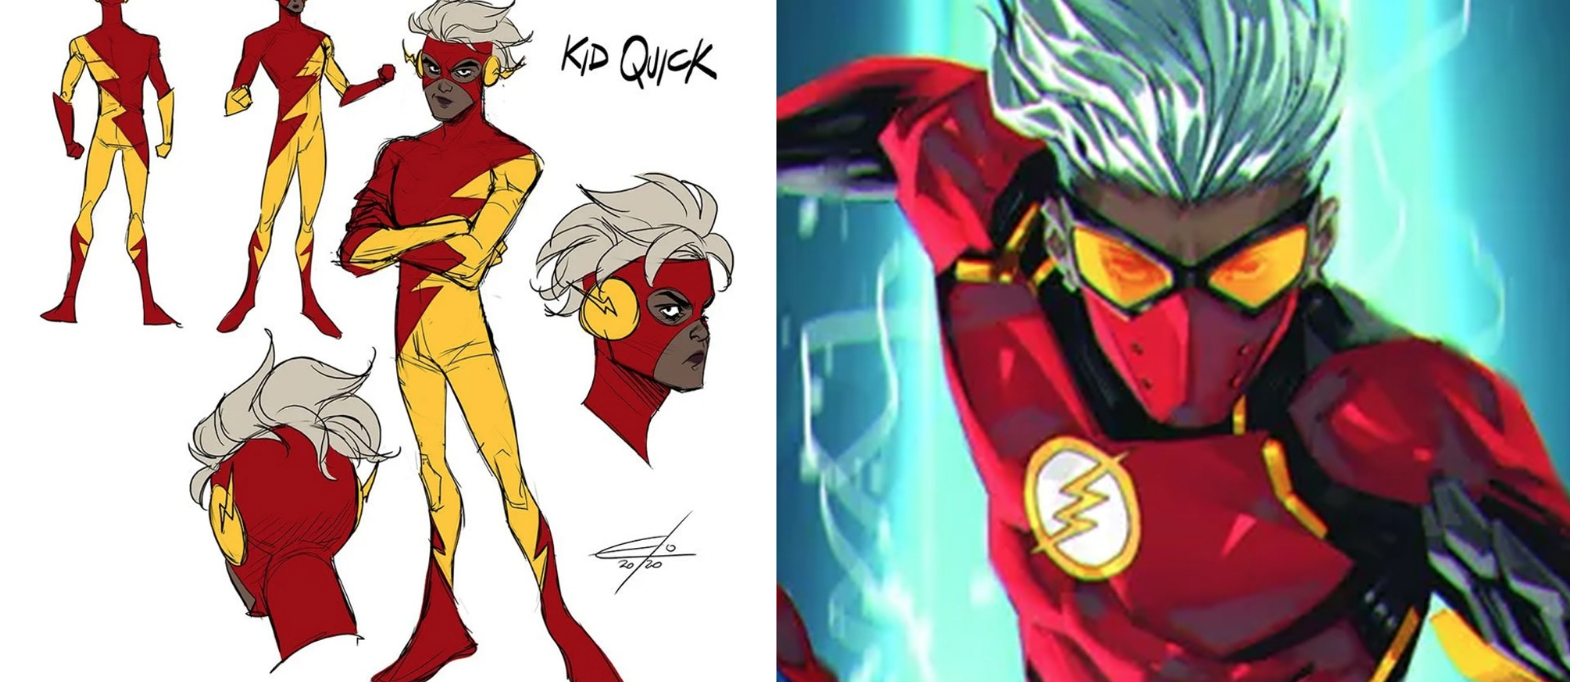 L’ennesimo supereroe gender: il debutto di Kid Quick, il Flash fluido 1